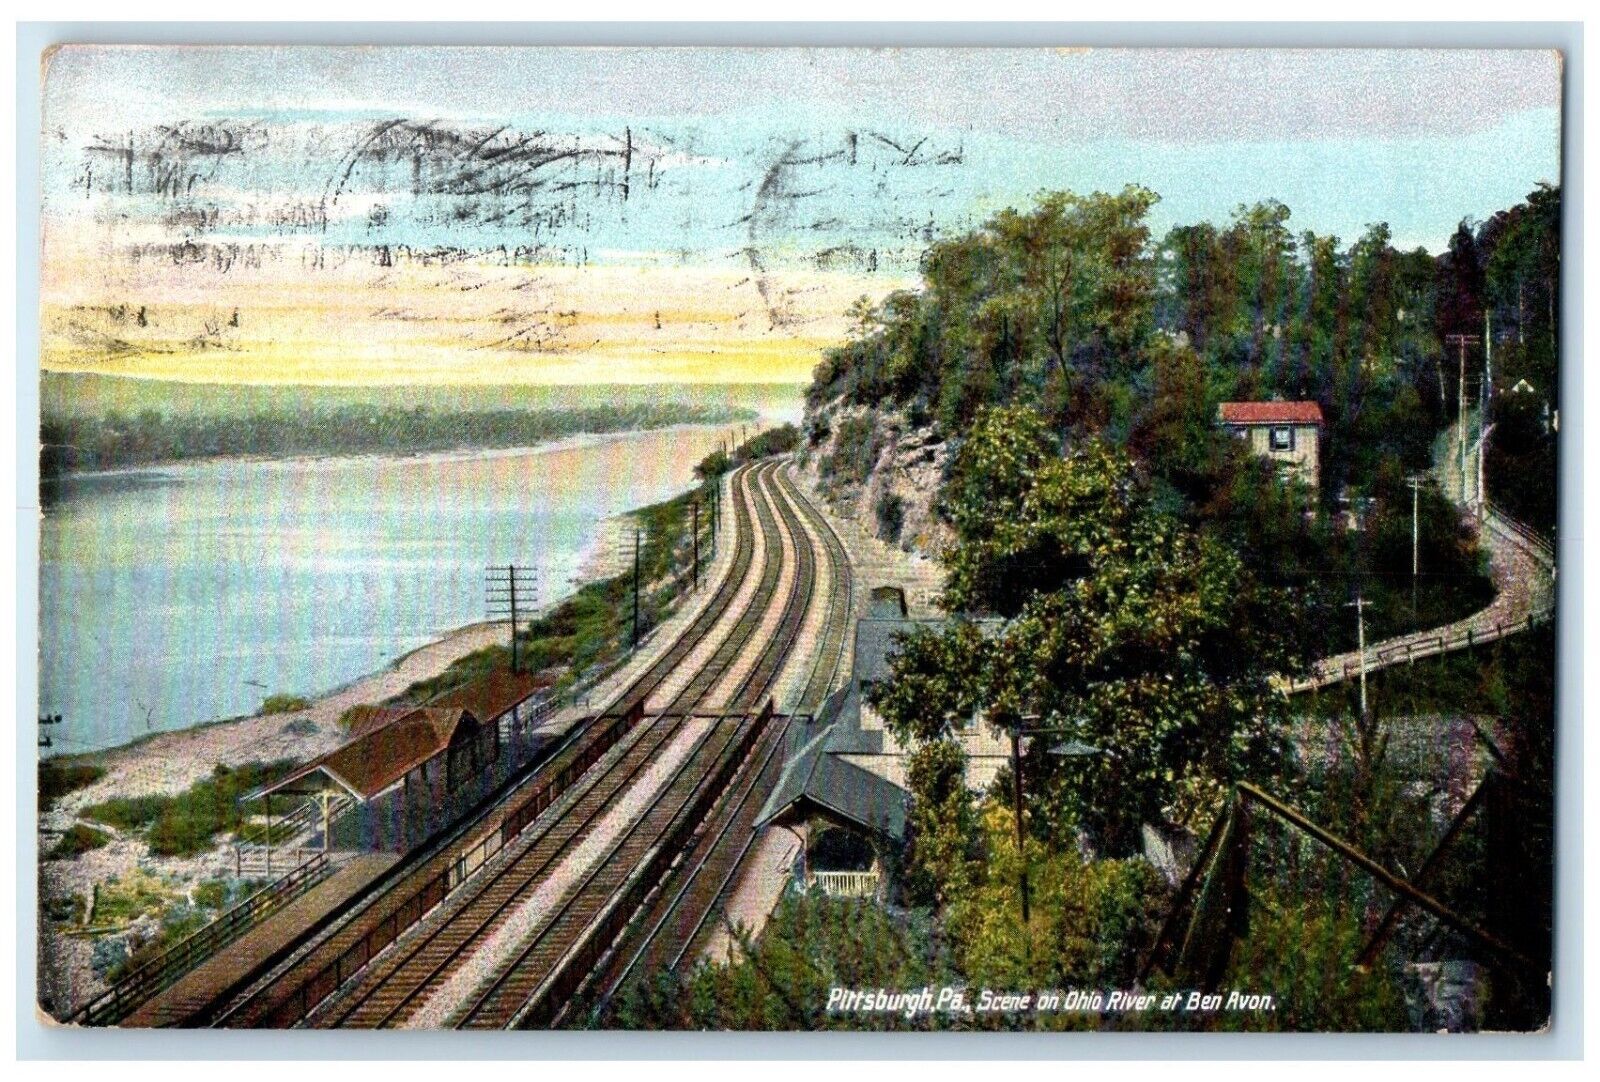 1909 Scene On Ohio River At Ben Avon Pittsburg Pennsylvania PA Vintage Postcard